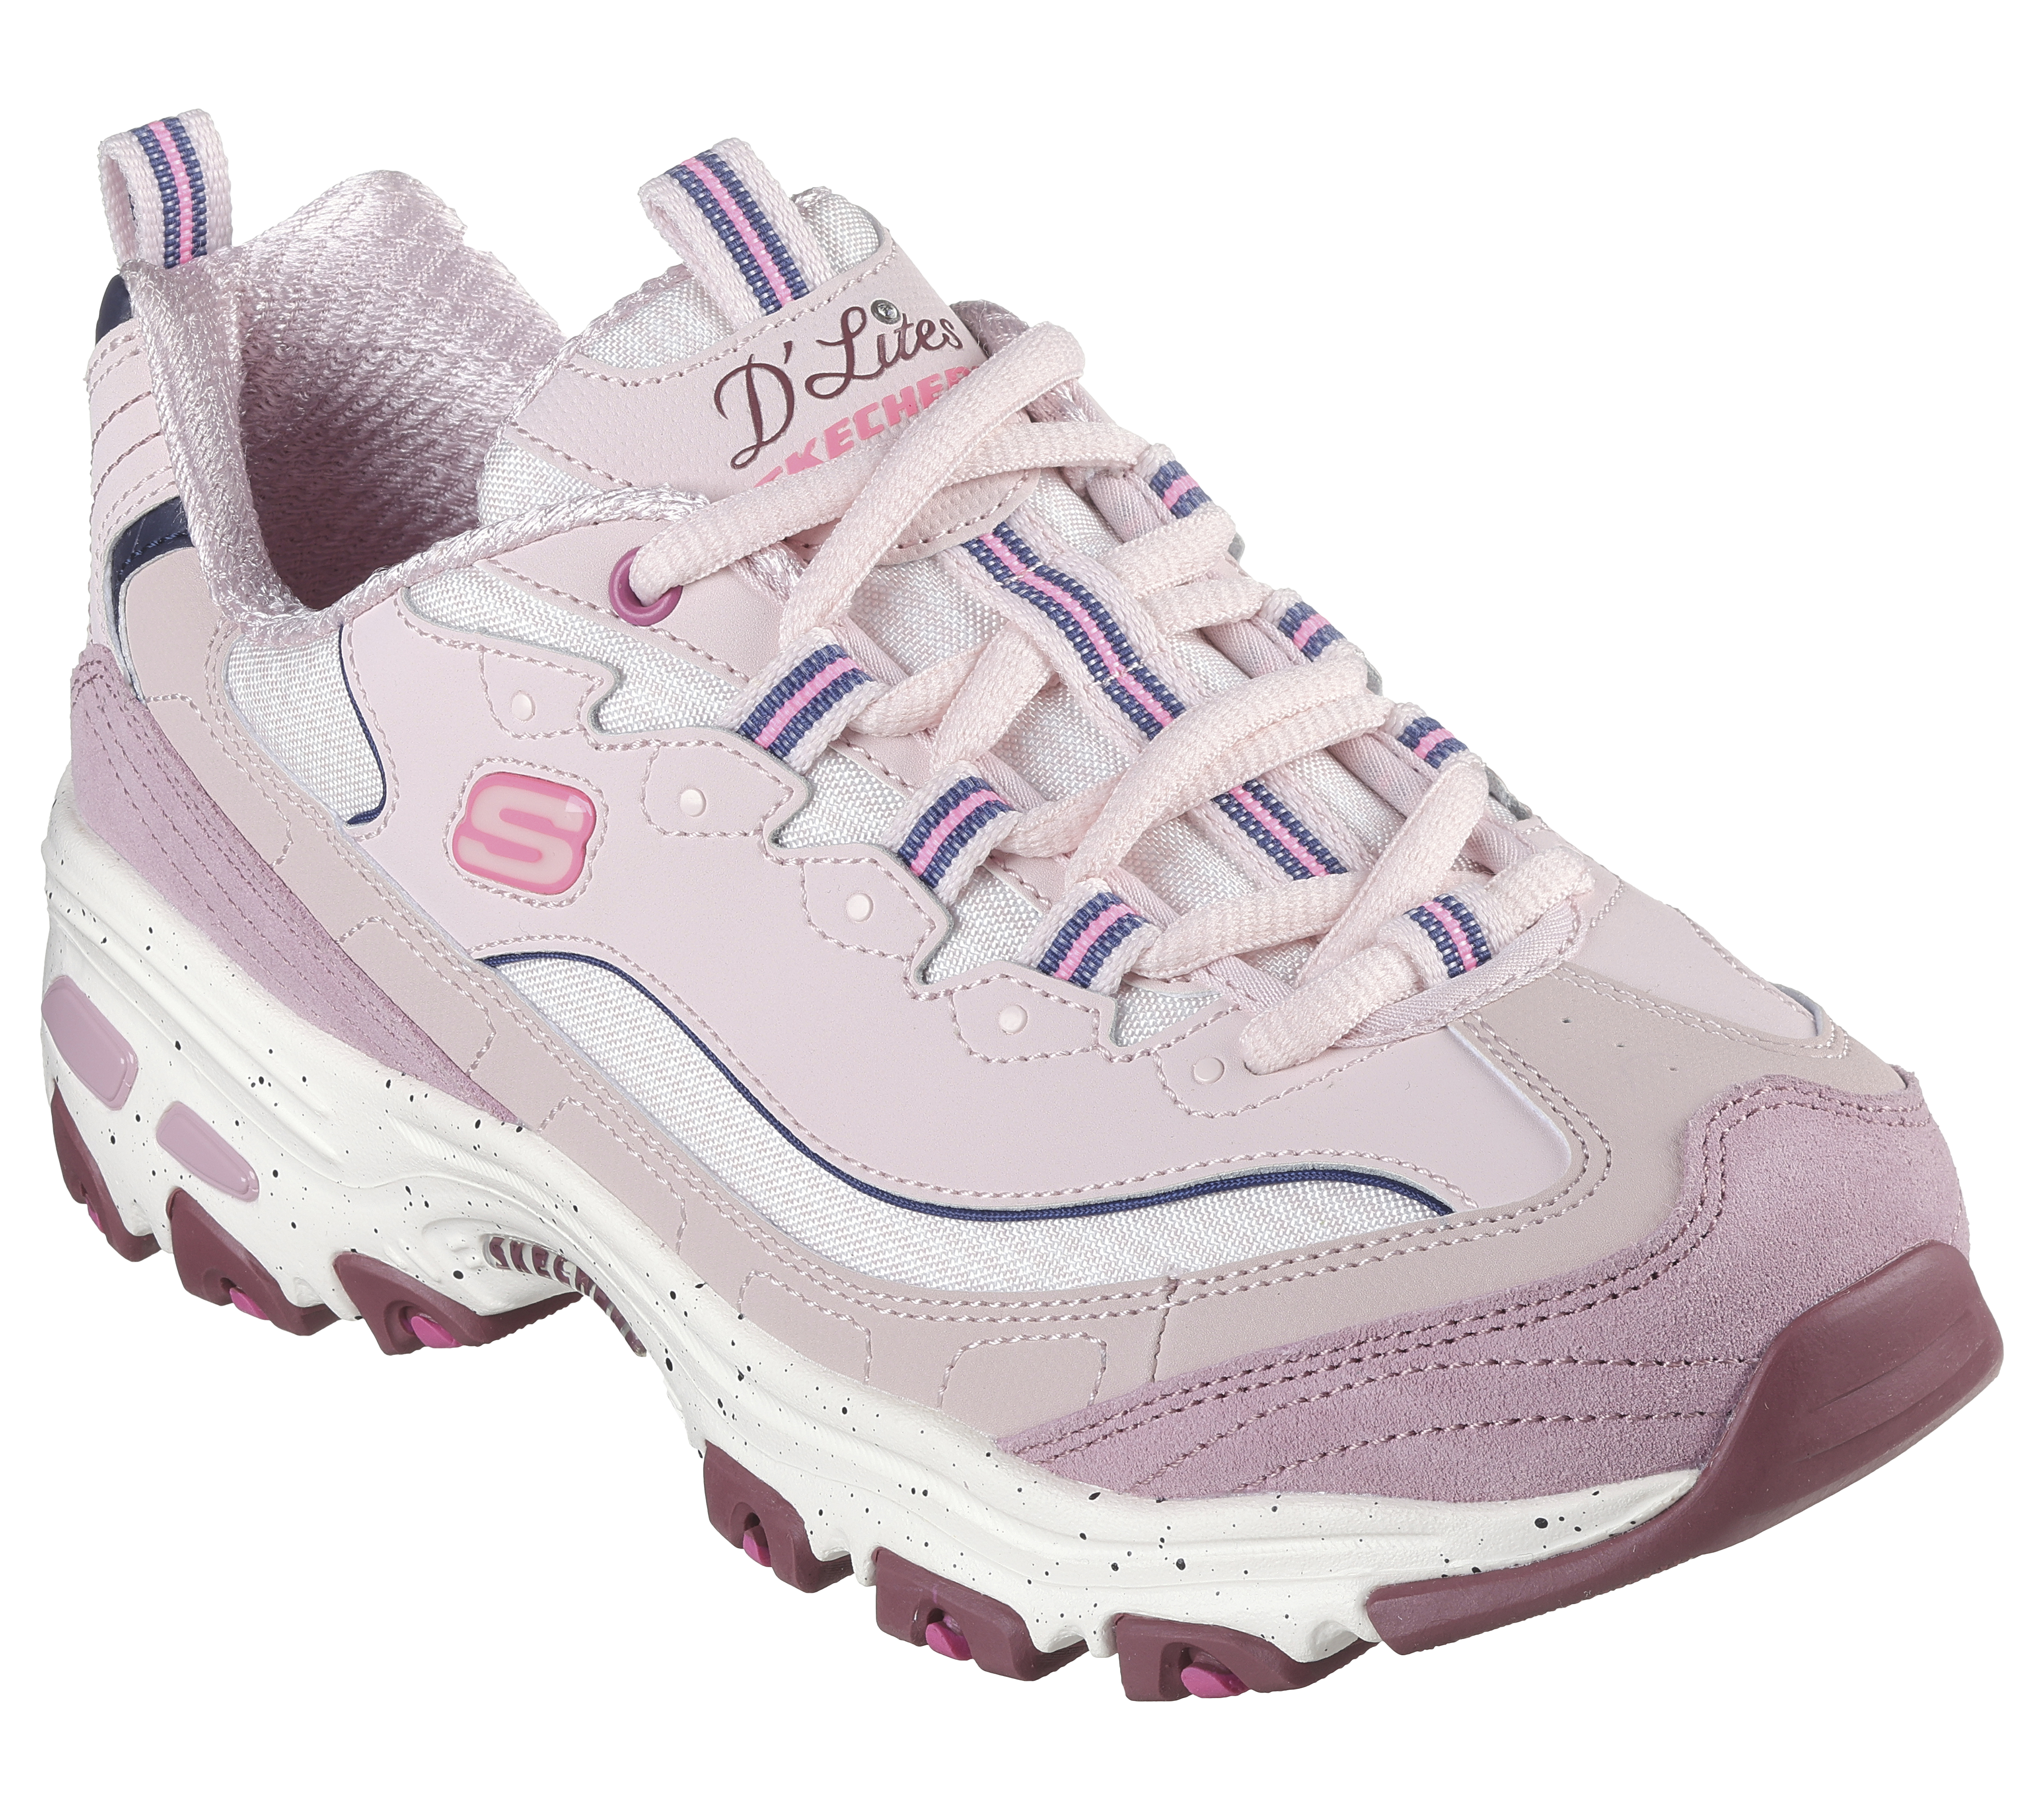  Skechers Sport Women's D'Lites Original Lace-Up Sneaker,  Grey/Pink, 6 W US